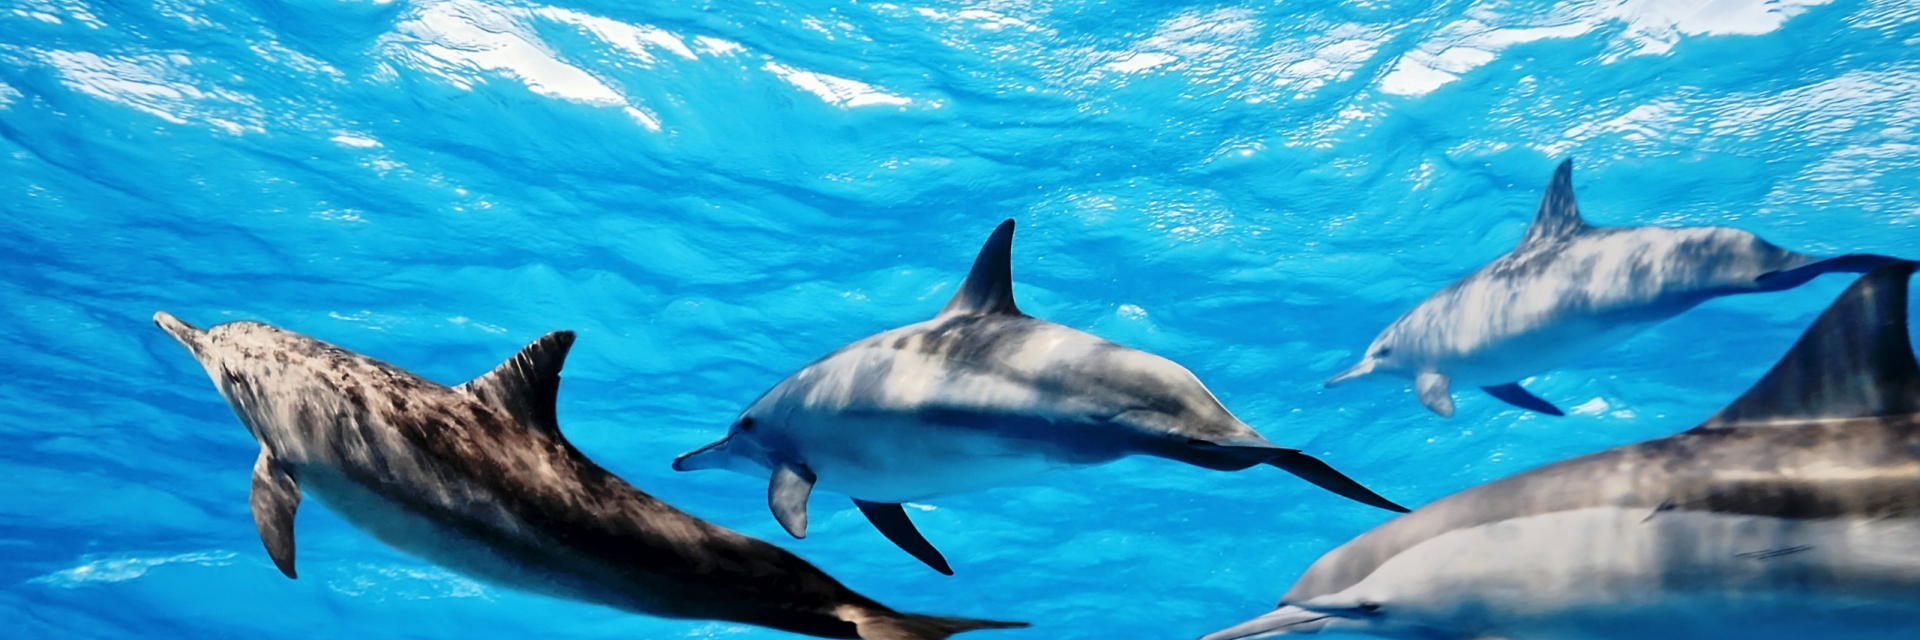 Остров голубых дельфинов. Бывают синие дельфины. Остров голубого дельфина, Панама. Скорость дельфина в воде